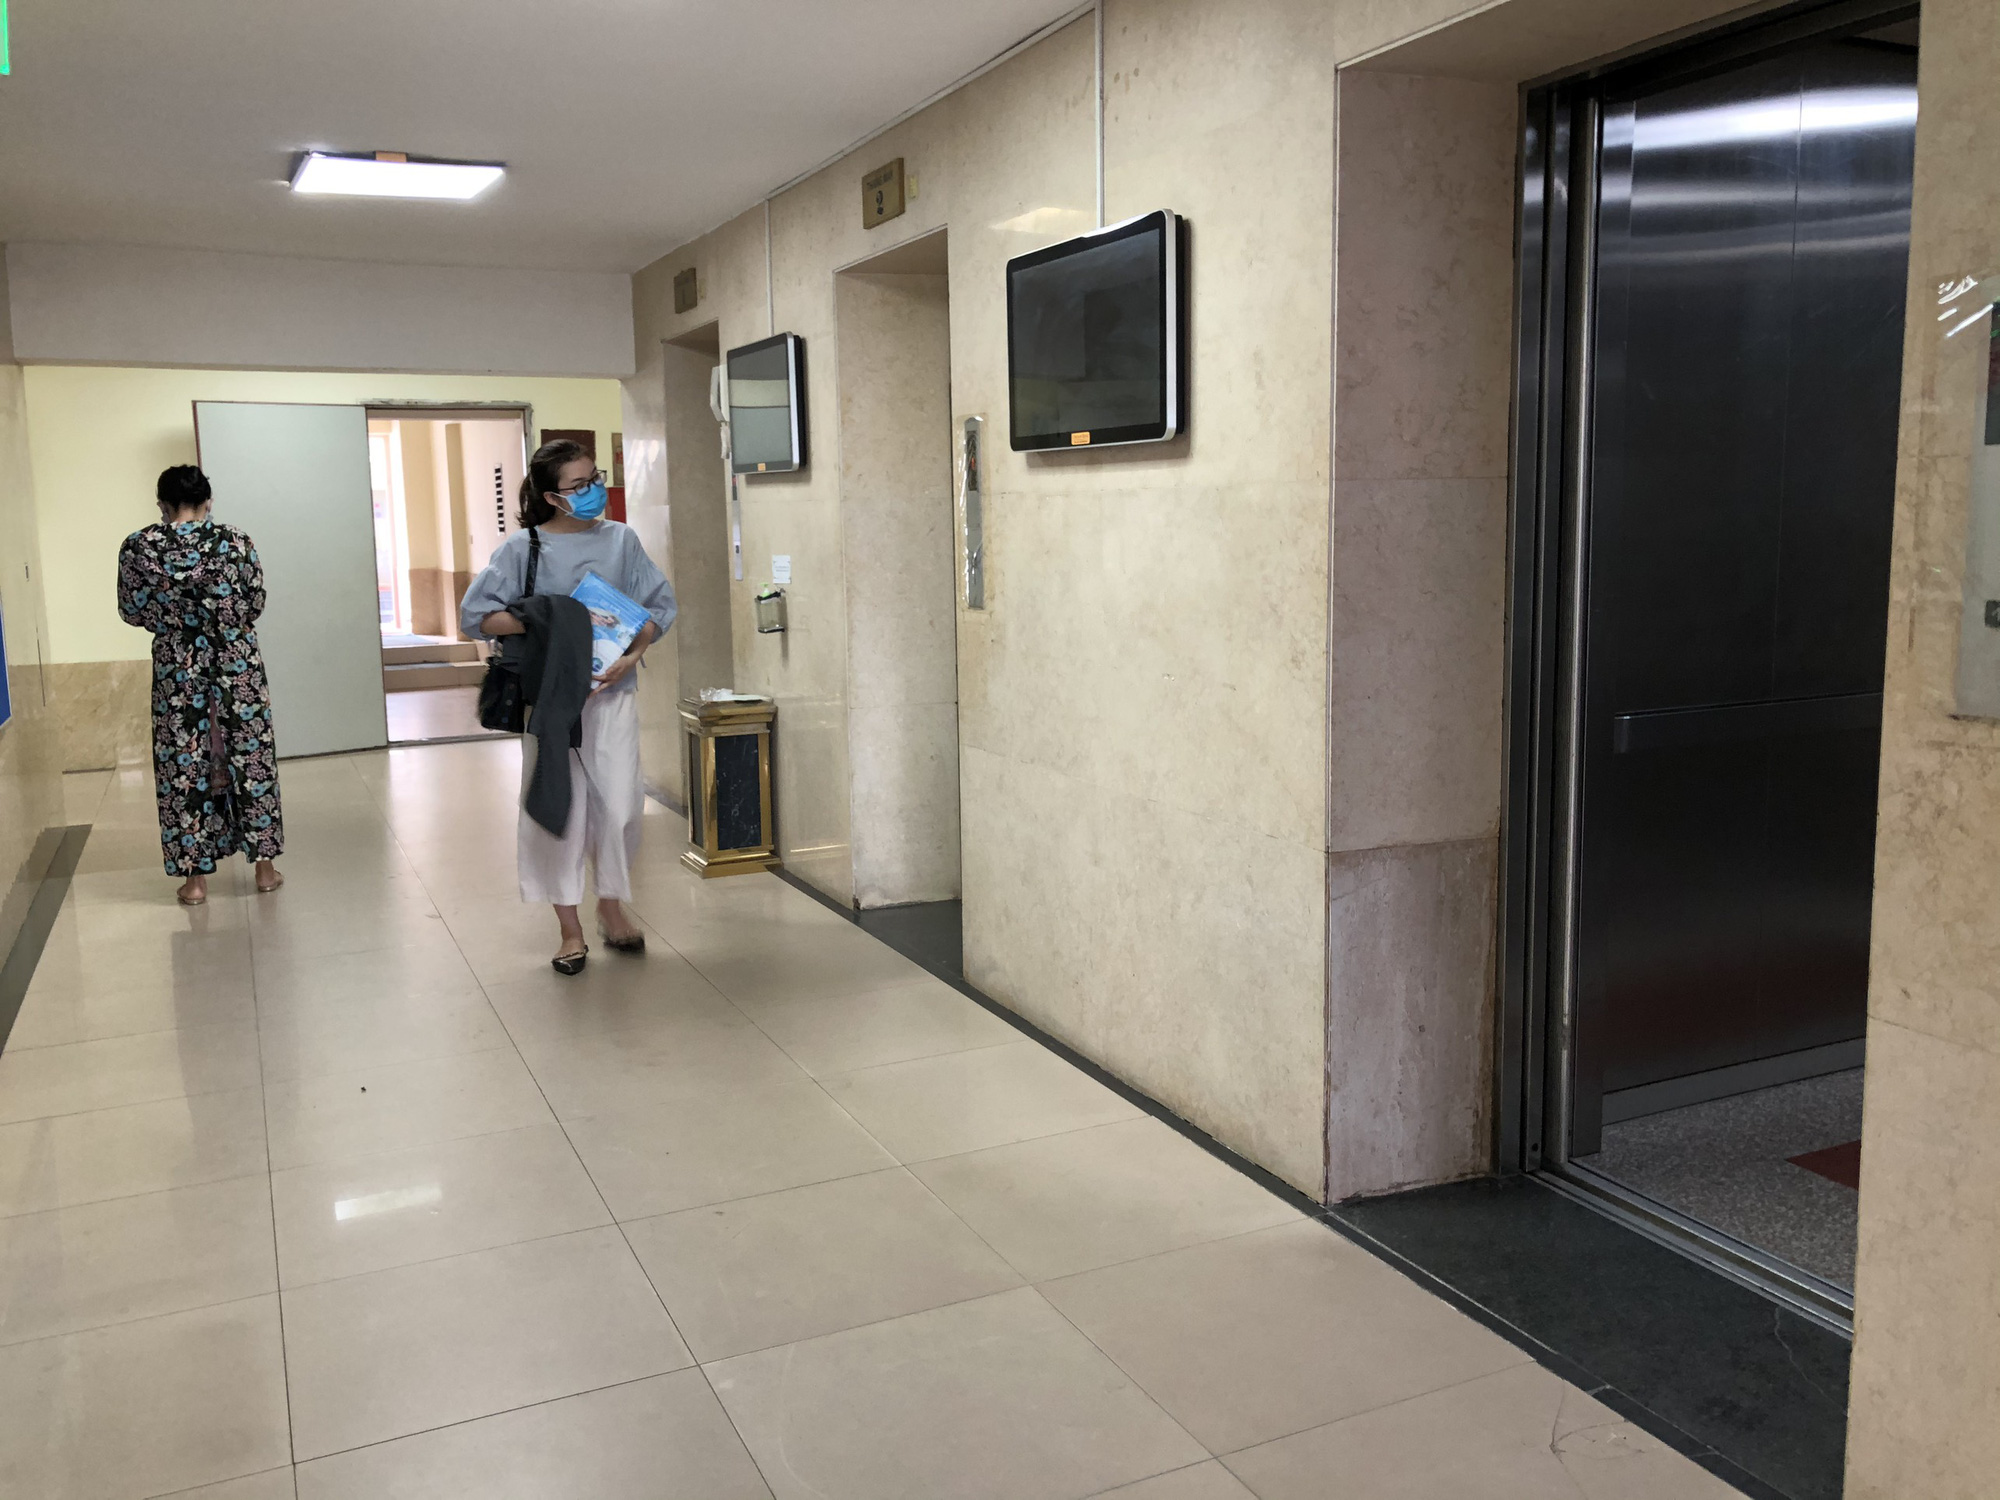 Vụ bé trai bị dâm ô trong thang máy ở Lạc Trung: Tạm giữ hình sự người đàn ông 65 tuổi - Ảnh 2.